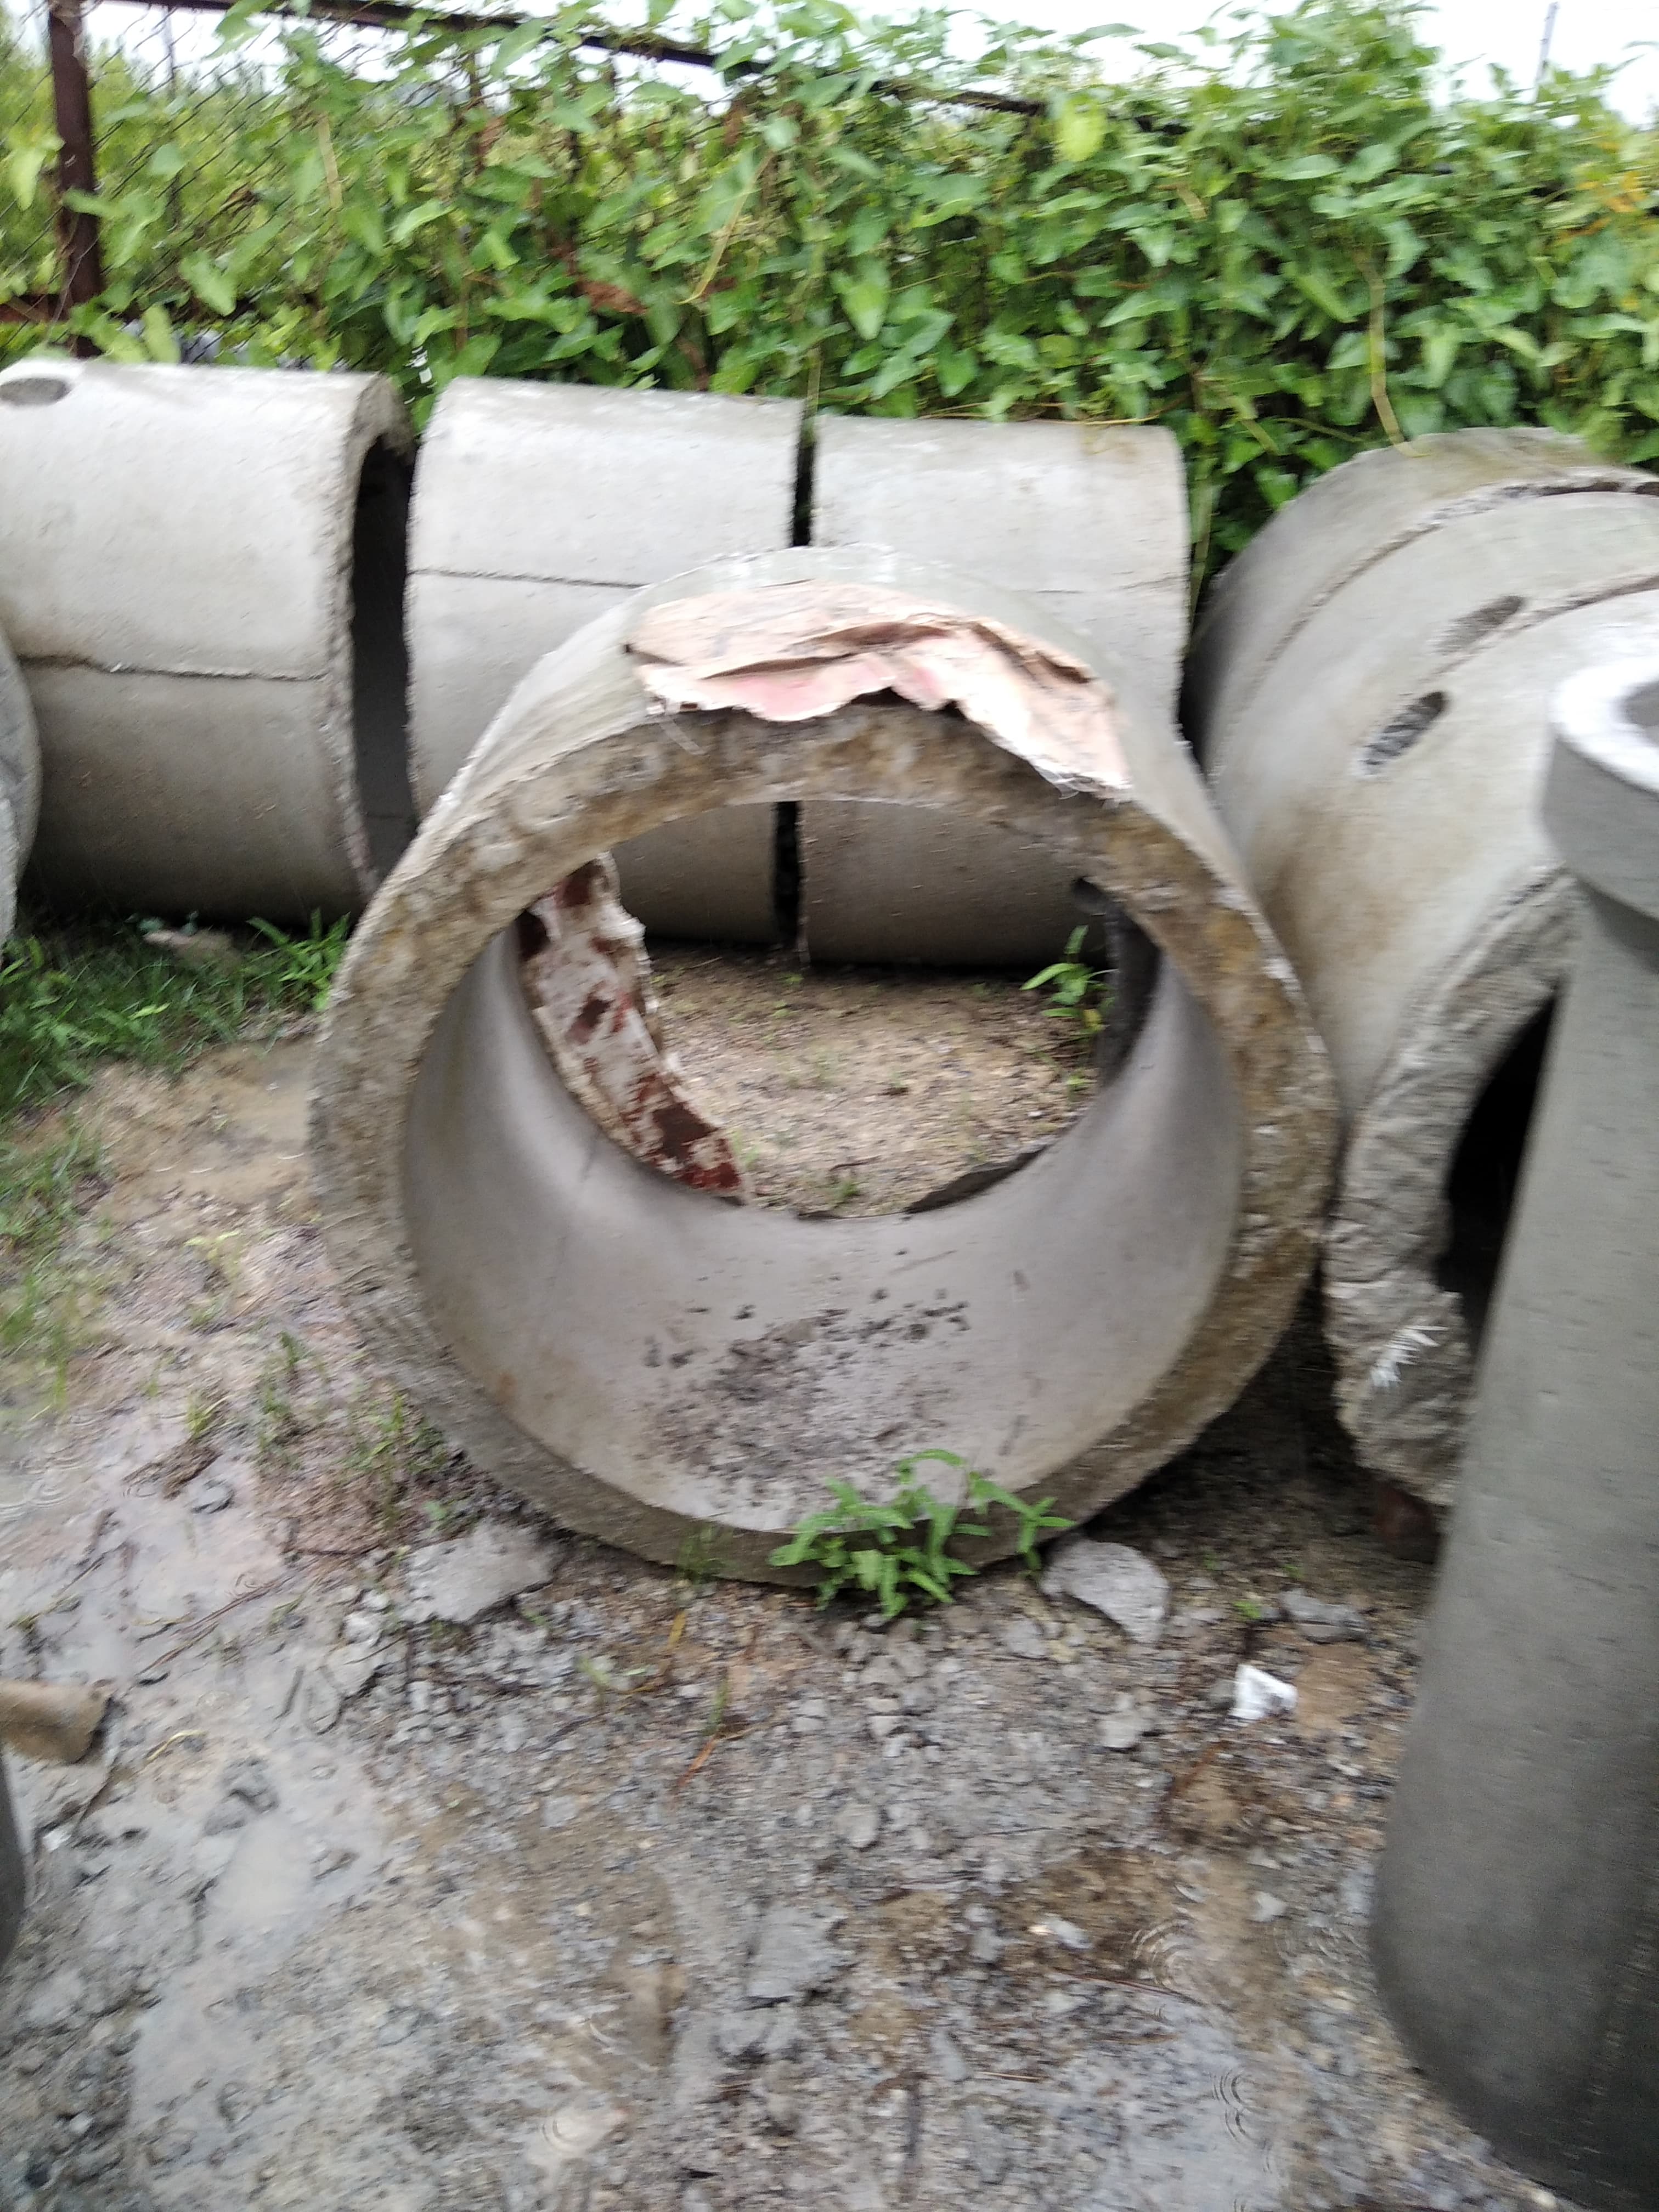 Bán và lắp đặt ống bi bê tông bể phốt tại Yên Sở 0976544885 (Hoàng Mai)|sua chua cai tao nang cap xay coi noi nha ve sinh tai yen so "Q. Hoang Mai"